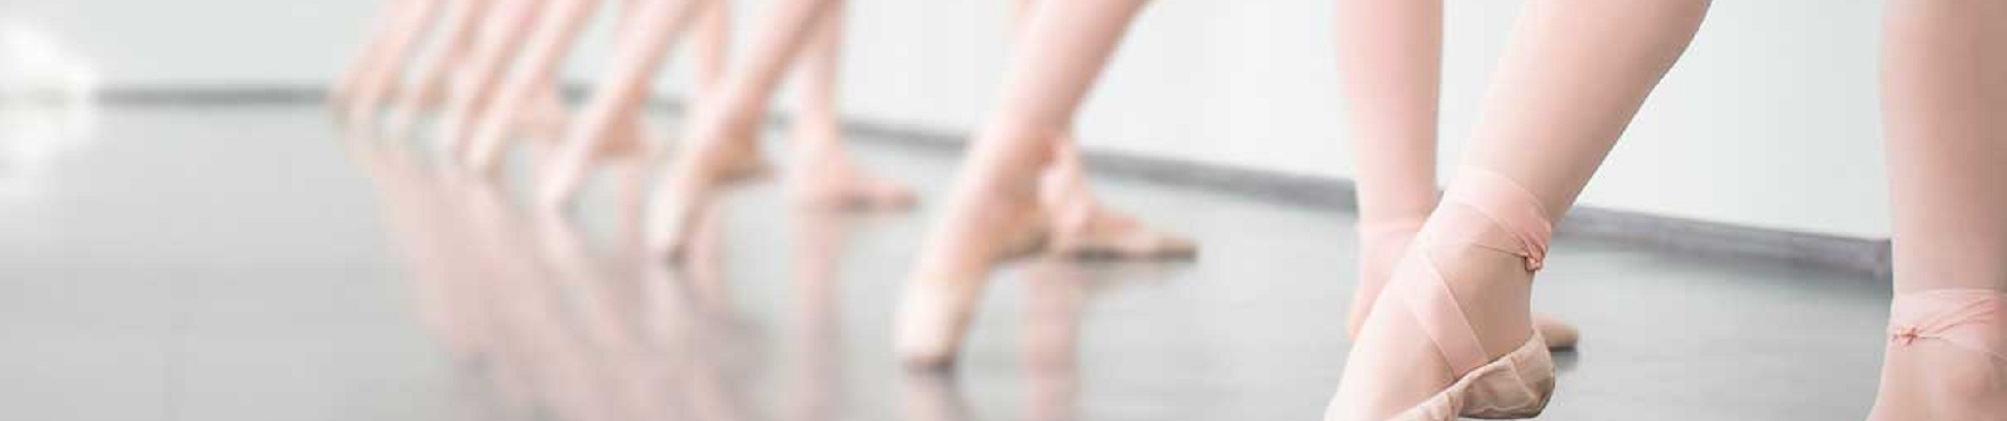 Clases de danza clásico en Zaragoza Escuela Bailarán